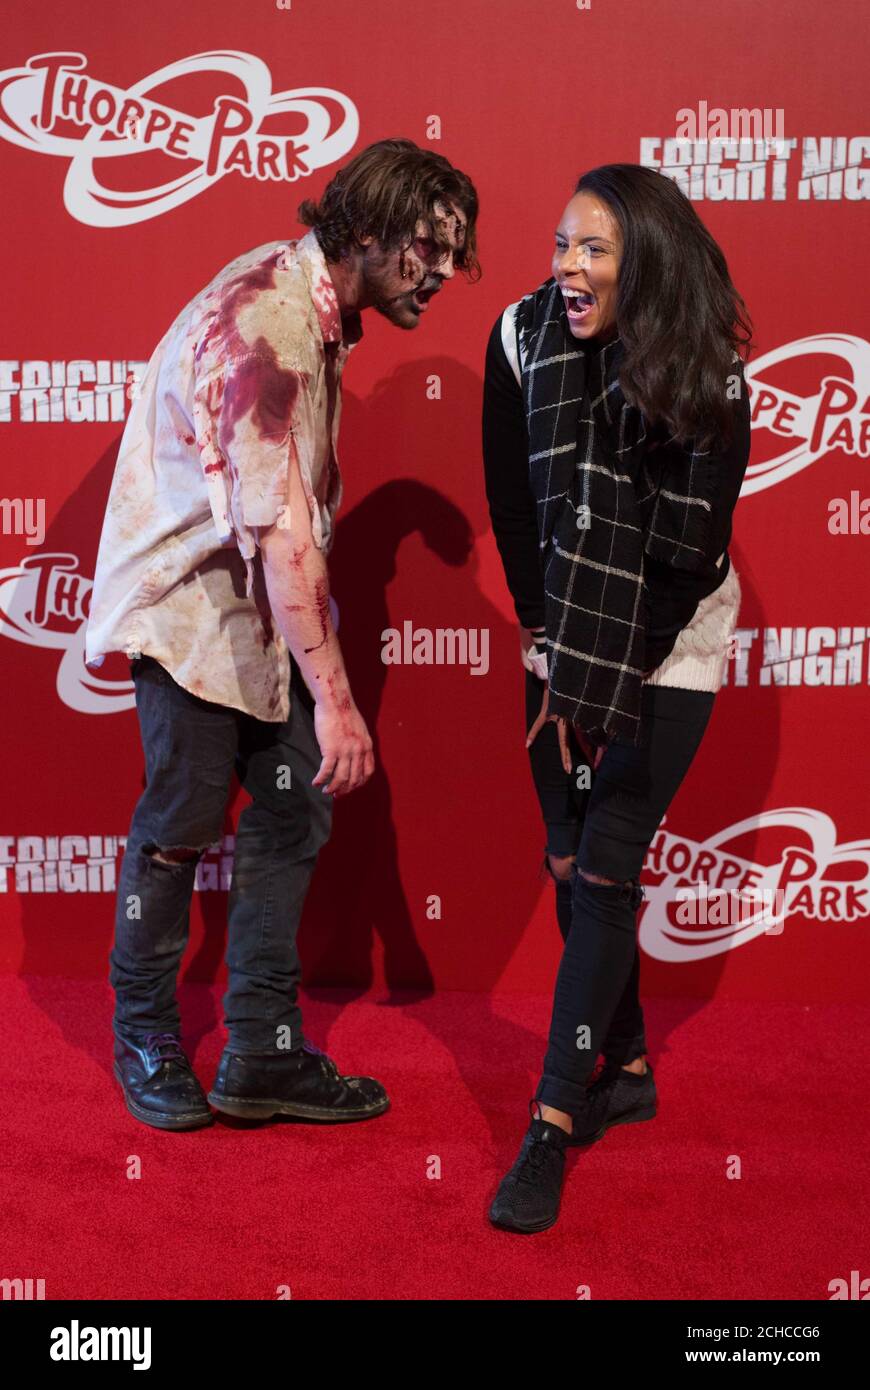 Louise Hazel interagisce con gli "zombie" al lancio della stagione annuale Fright Nights DEL THORPE PARK Resort, che presenta due nuovi labirinti d'azione dal vivo ispirati allo show televisivo The Walking Dead. Foto Stock